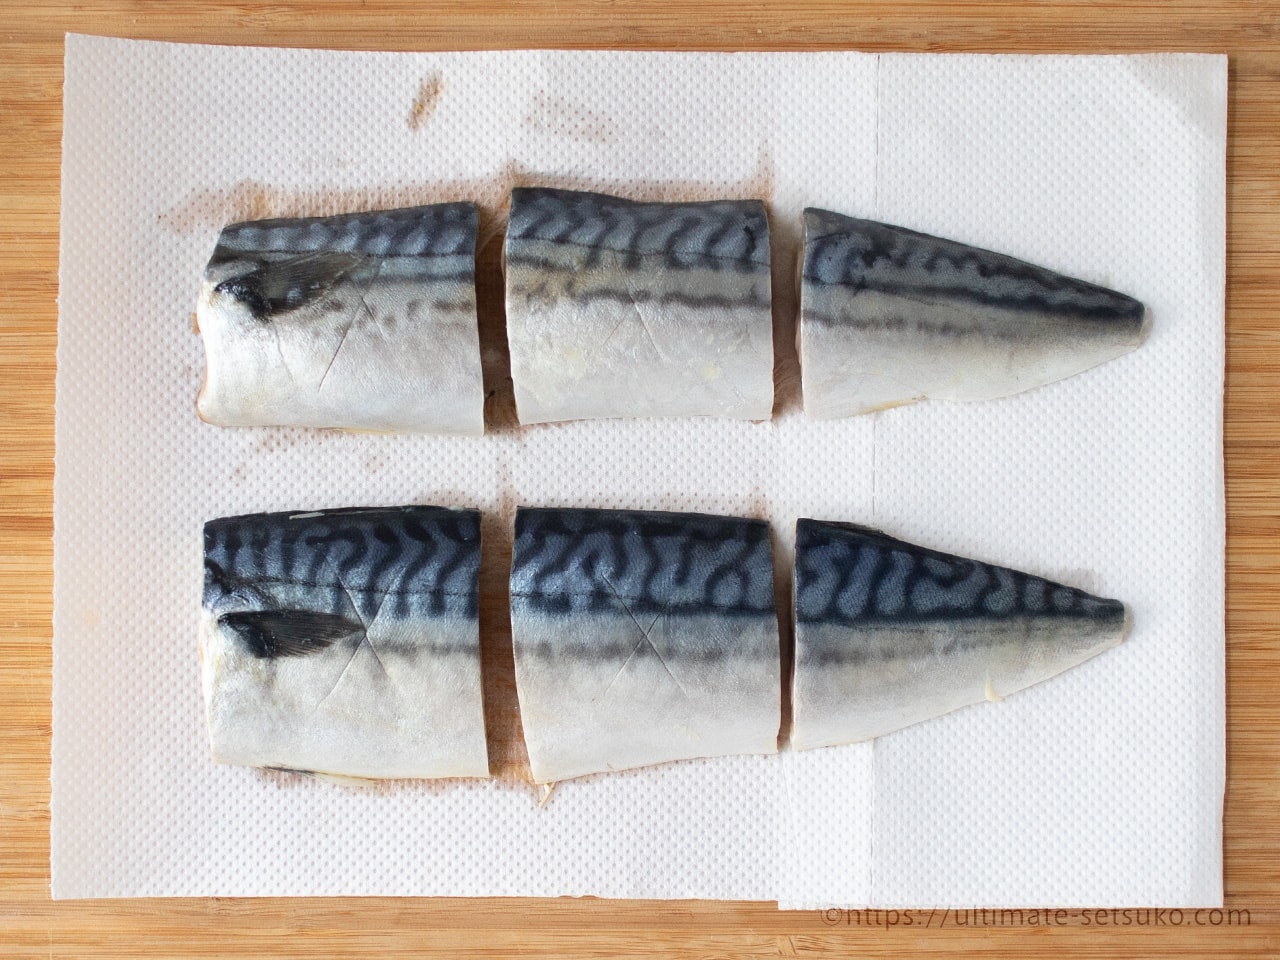 コストコの塩さばフィレは鯖の常識が変わるウマさに驚く 保存方法も解説